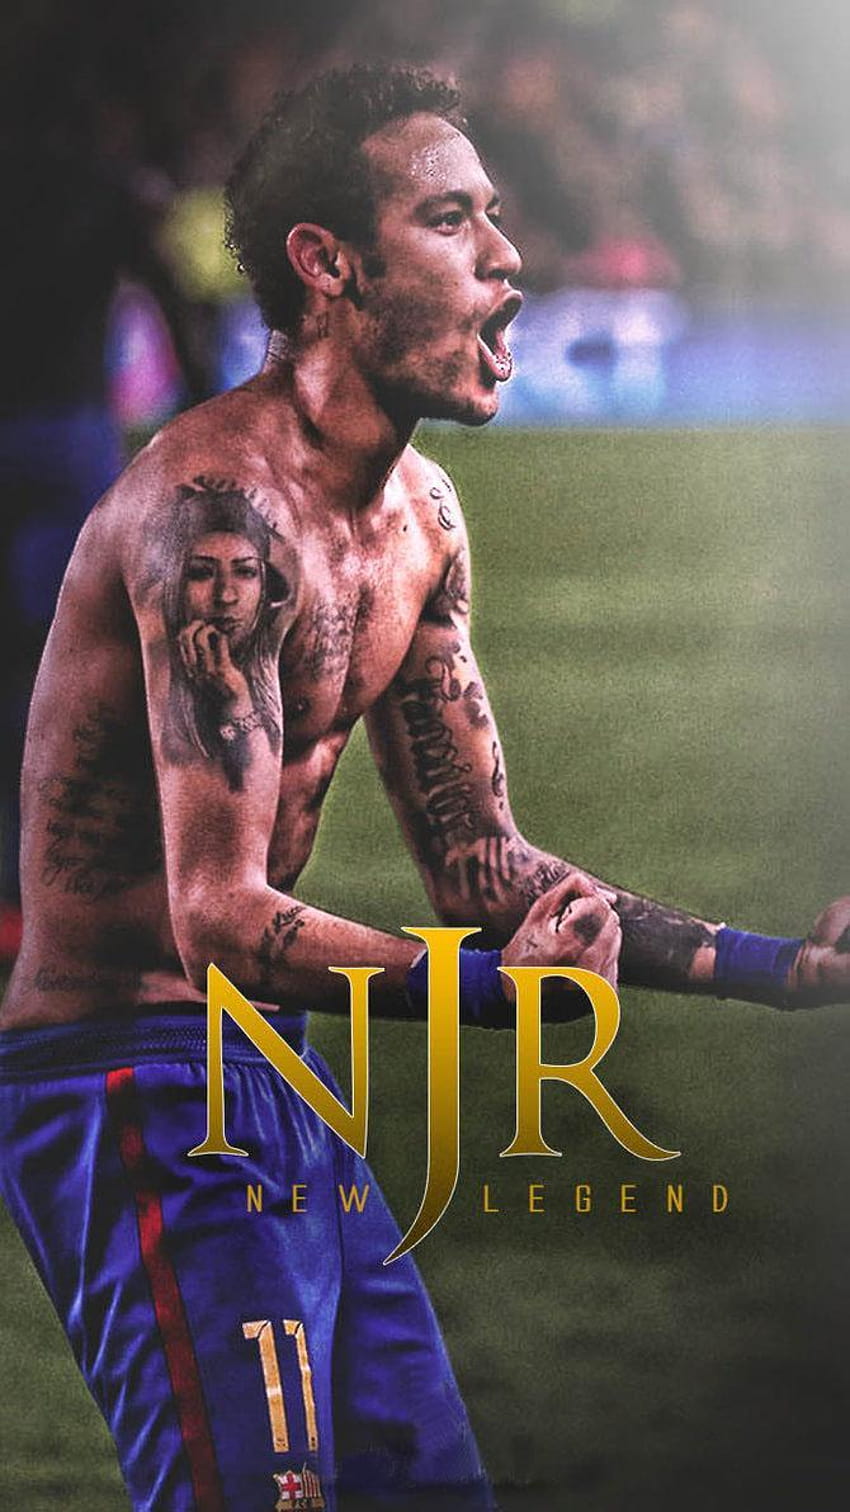 Neymar New, legend footballer HD phone wallpaper